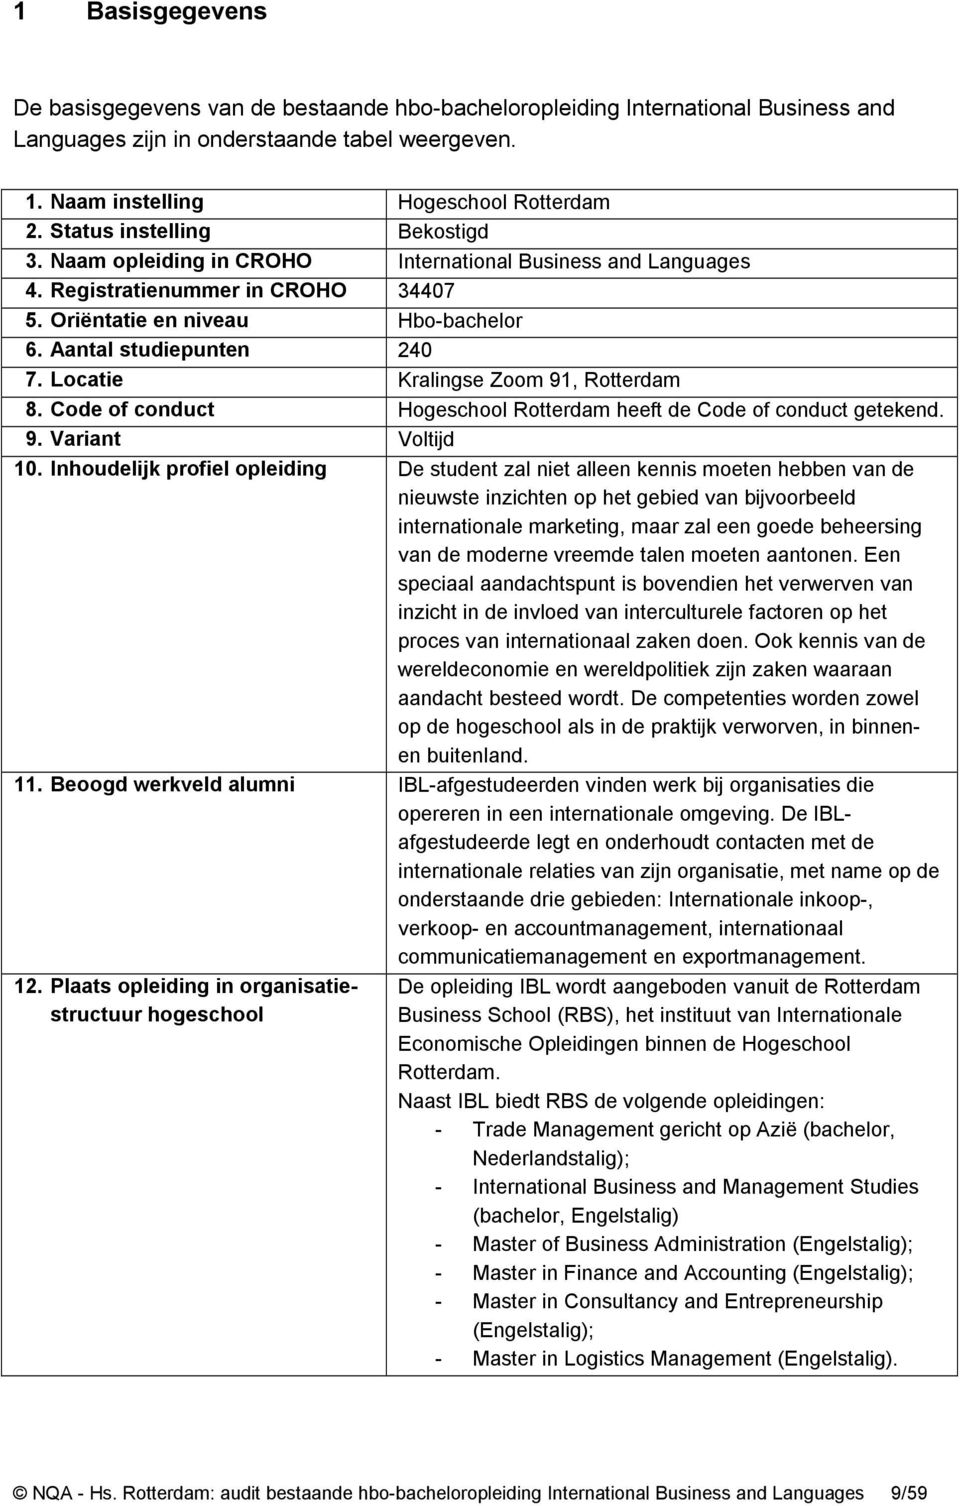 Locatie Kralingse Zoom 91, Rotterdam 8. Code of conduct Hogeschool Rotterdam heeft de Code of conduct getekend. 9. Variant Voltijd 10.